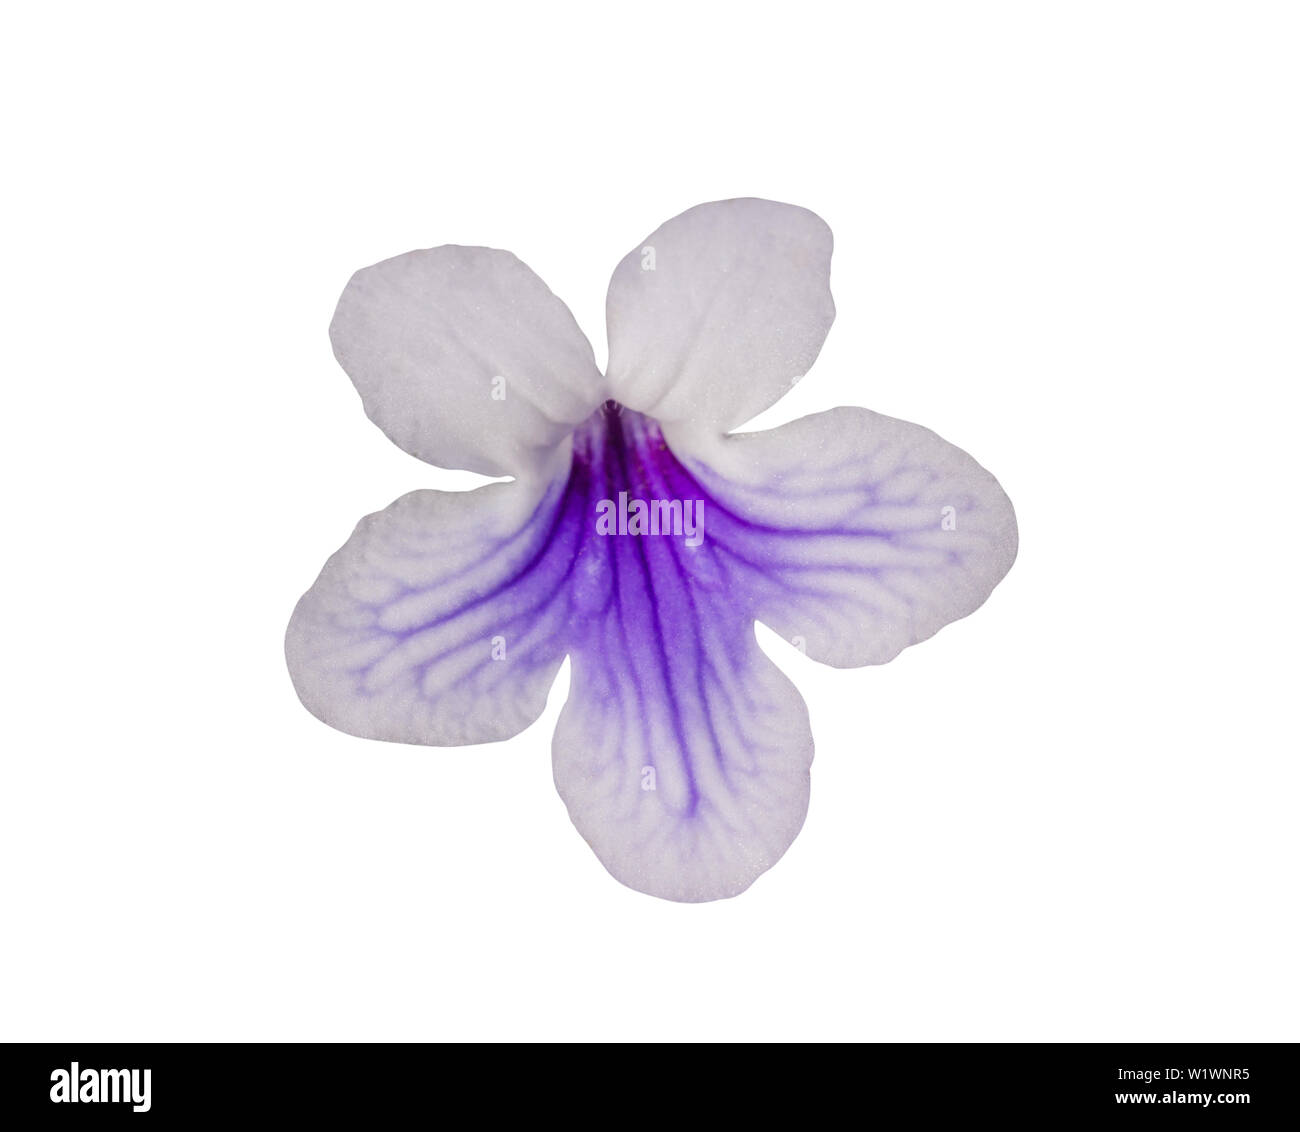 Streptocarpus white and blue flower isolated on white. Stock Photo